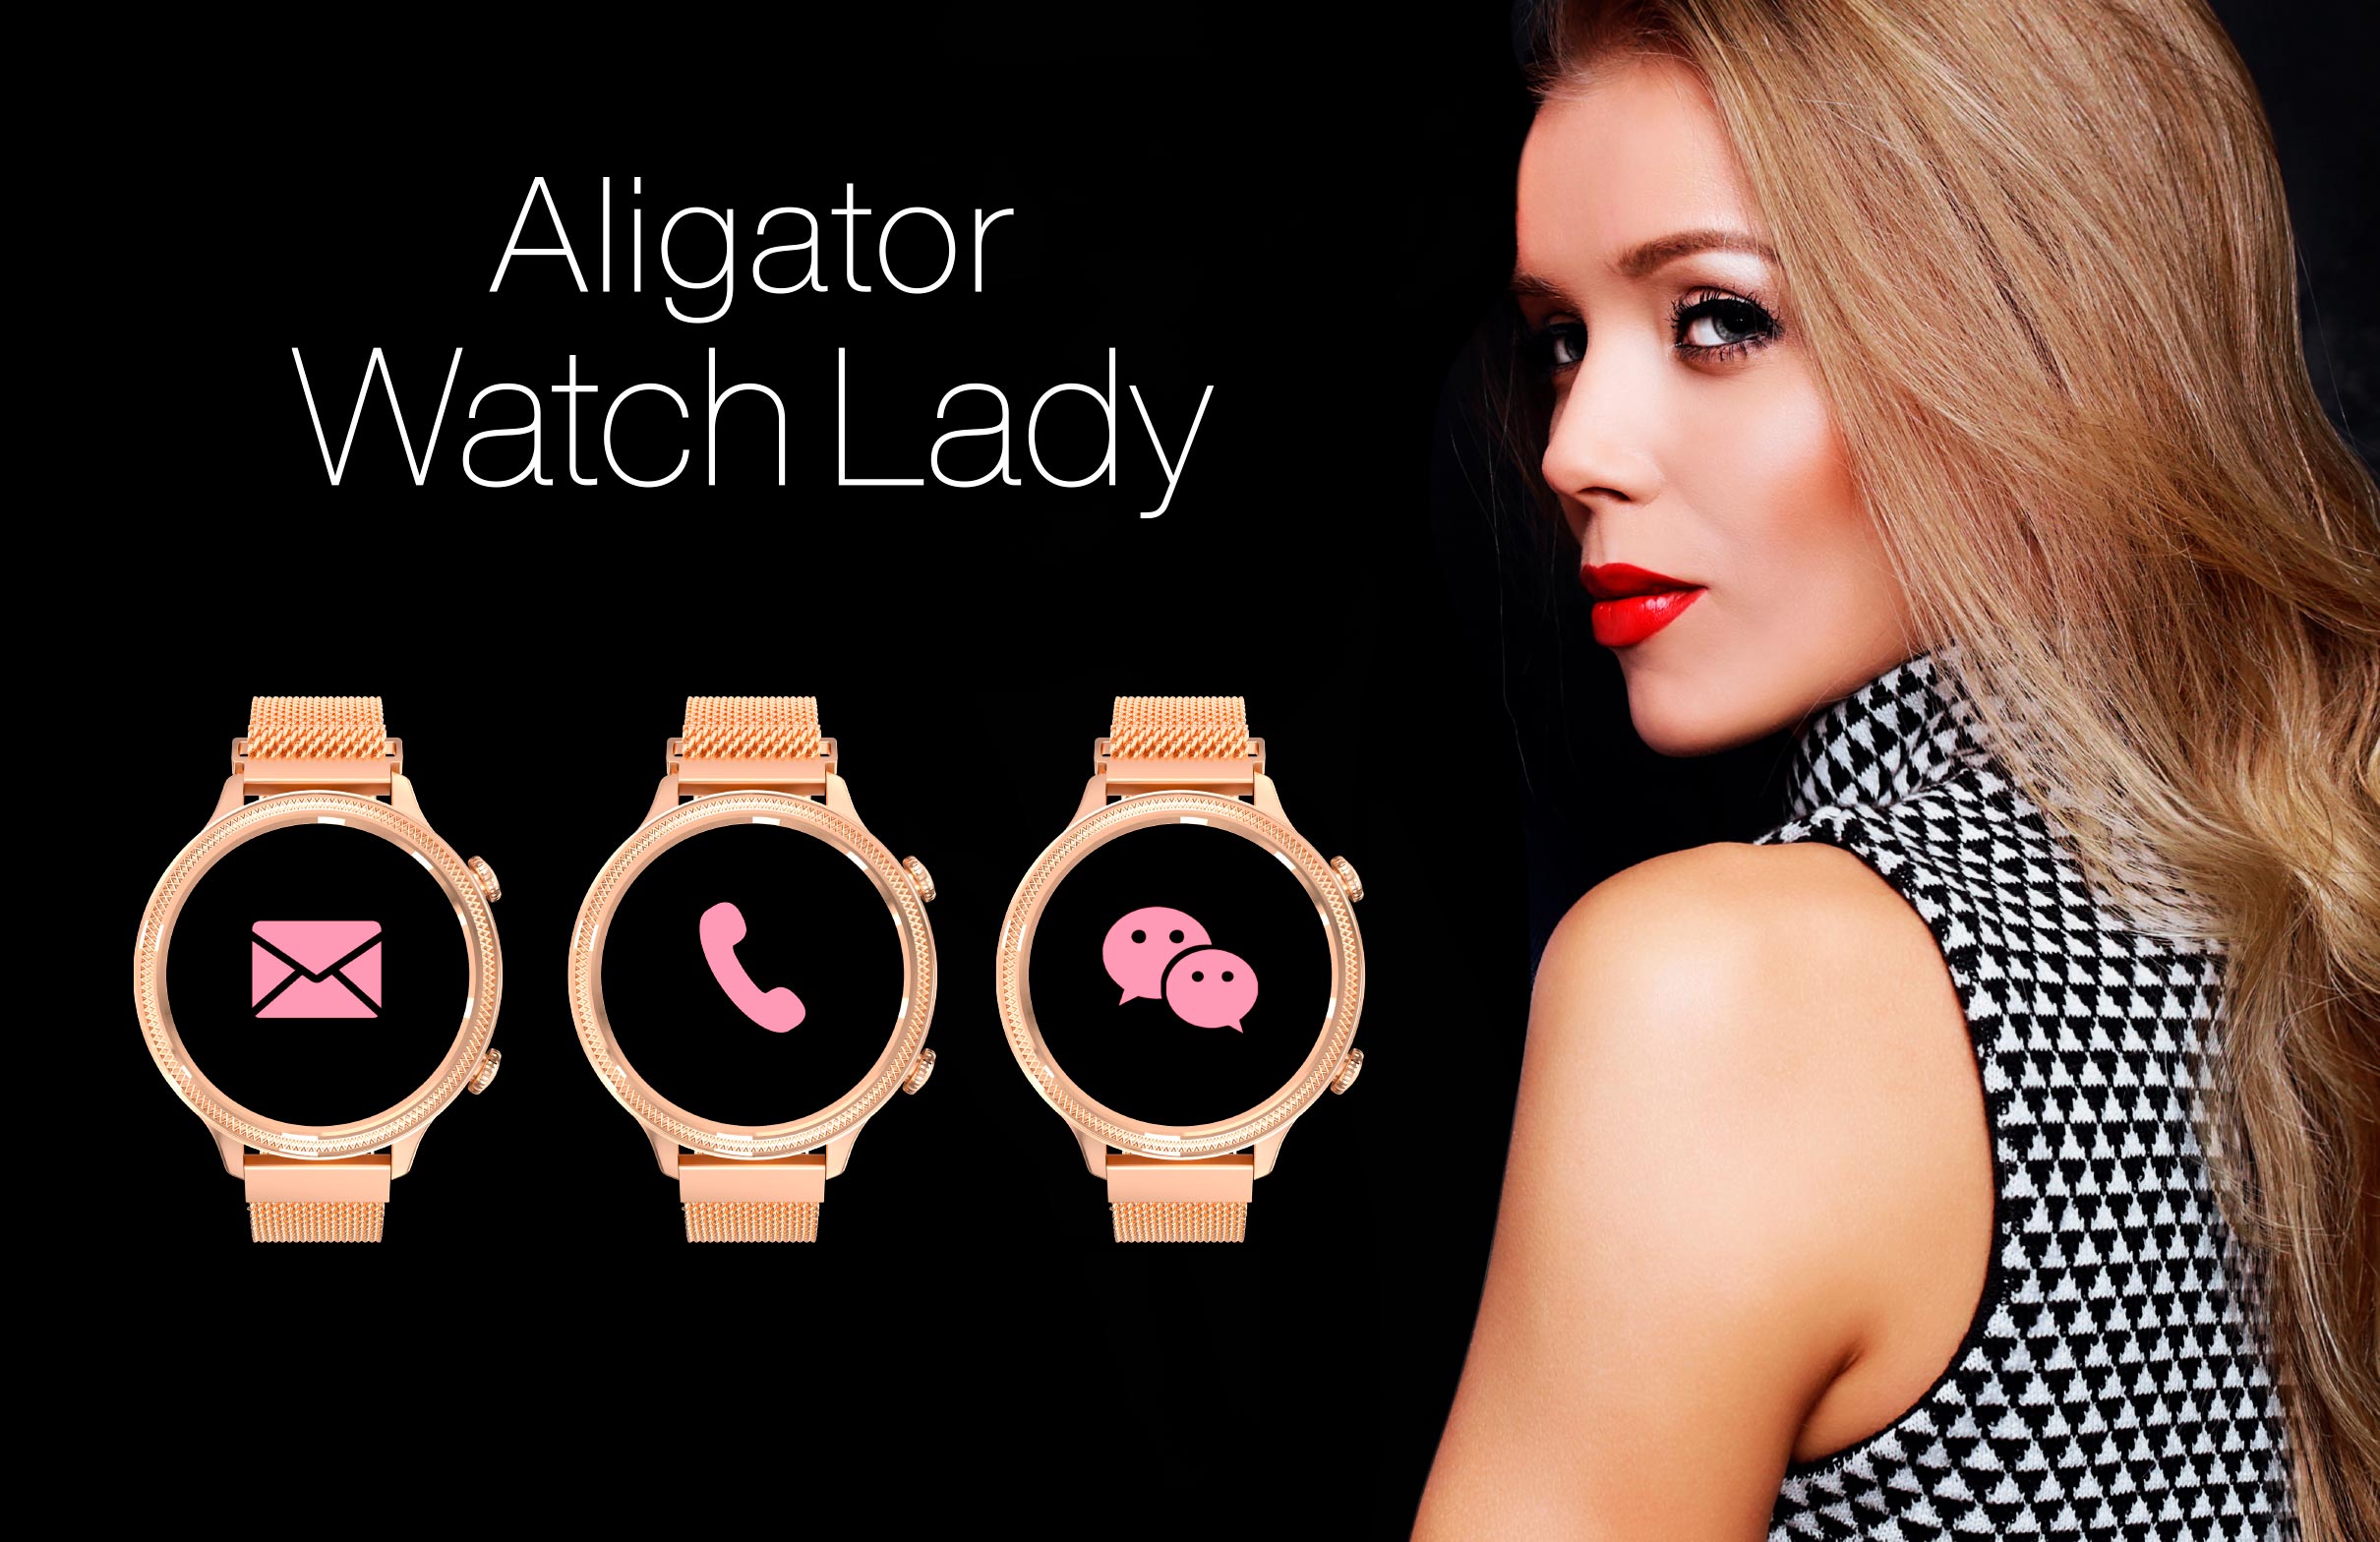 Aligator Watch Lady zlatá